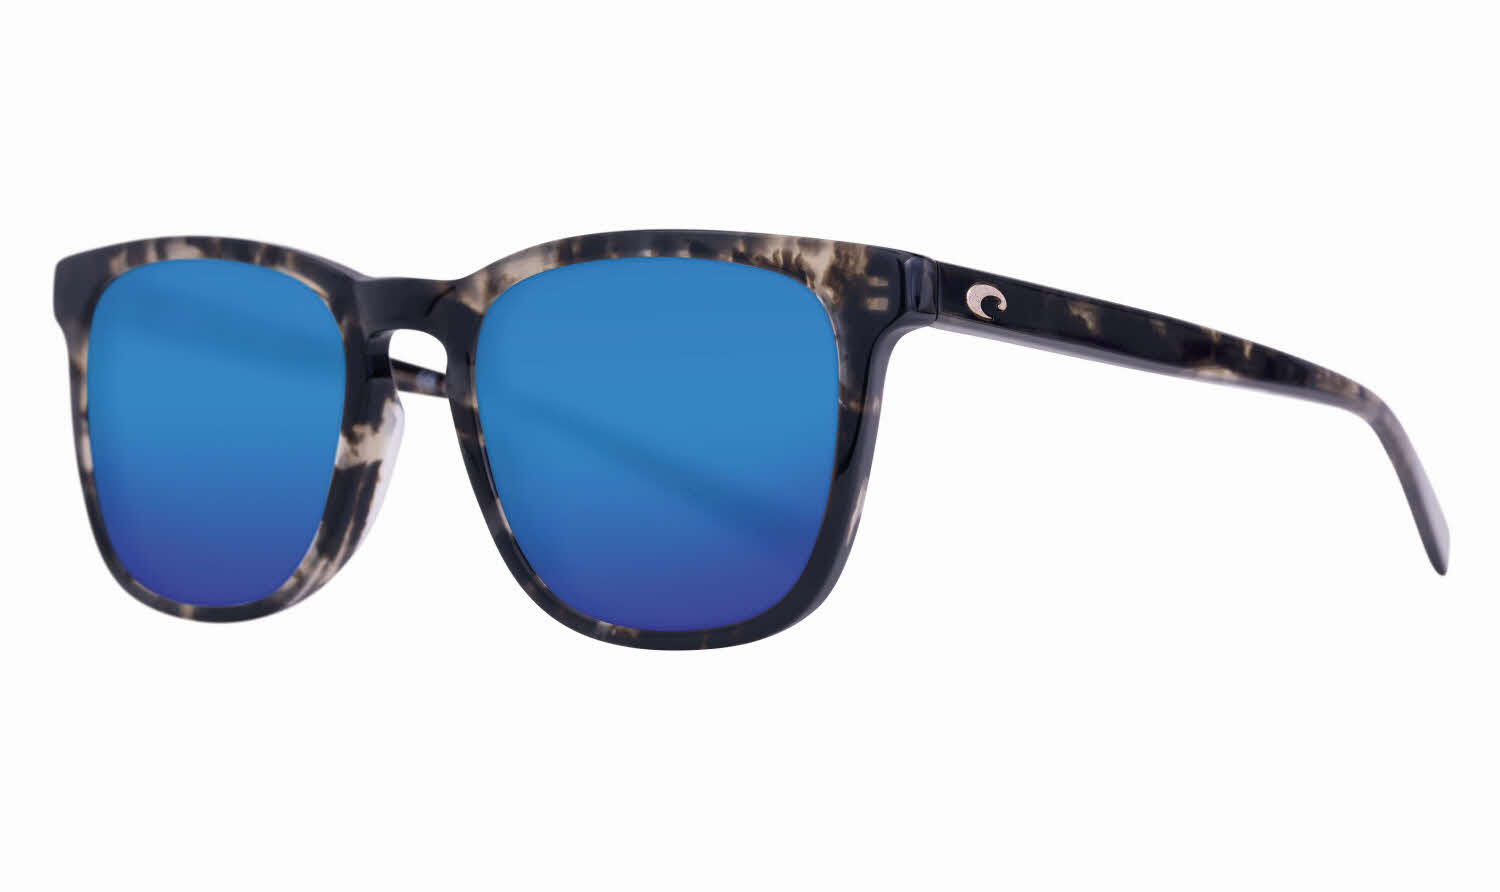 Costa Sullivan - Del Mar Collection Sunglasses